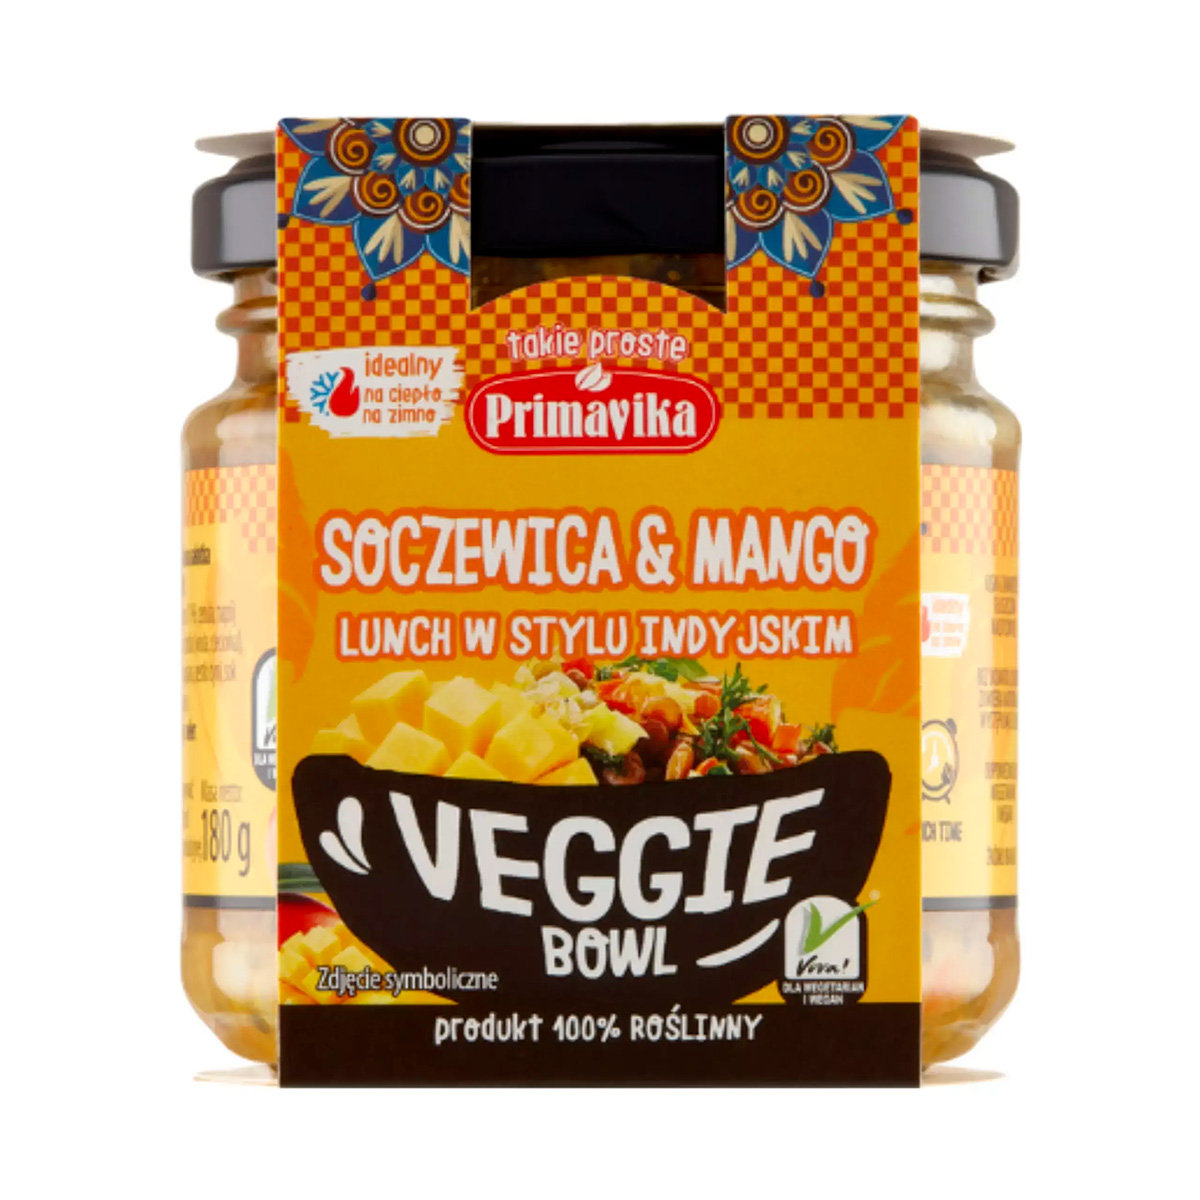 PRIMAVIKA Veggie Bowl Soczewica & Mango Lunch w Stylu Indyjskim 180g -